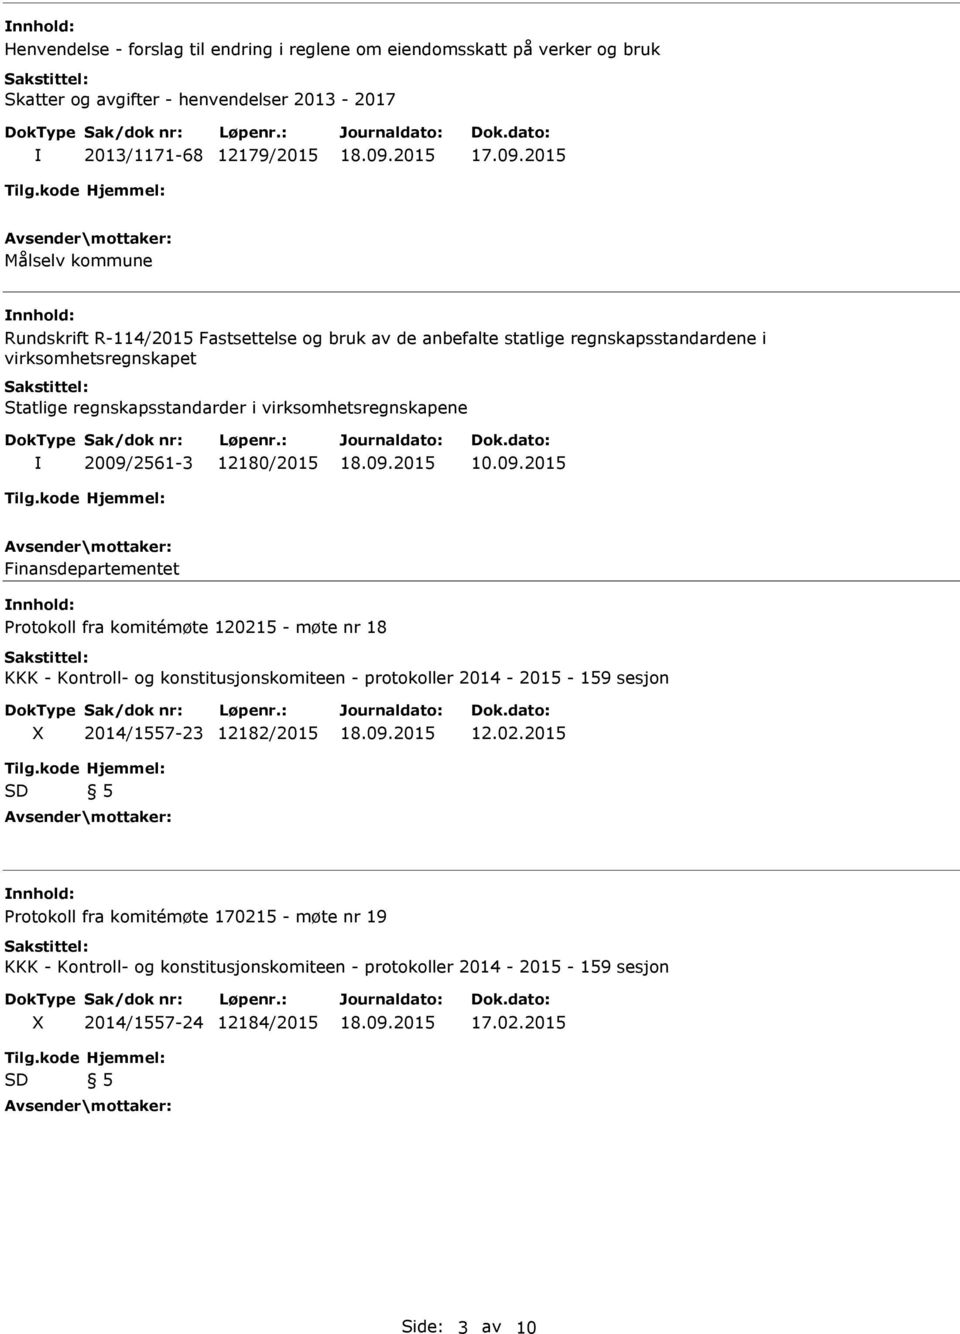 2015 Målselv kommune Rundskrift R-114/2015 Fastsettelse og bruk av de anbefalte statlige regnskapsstandardene i virksomhetsregnskapet Statlige